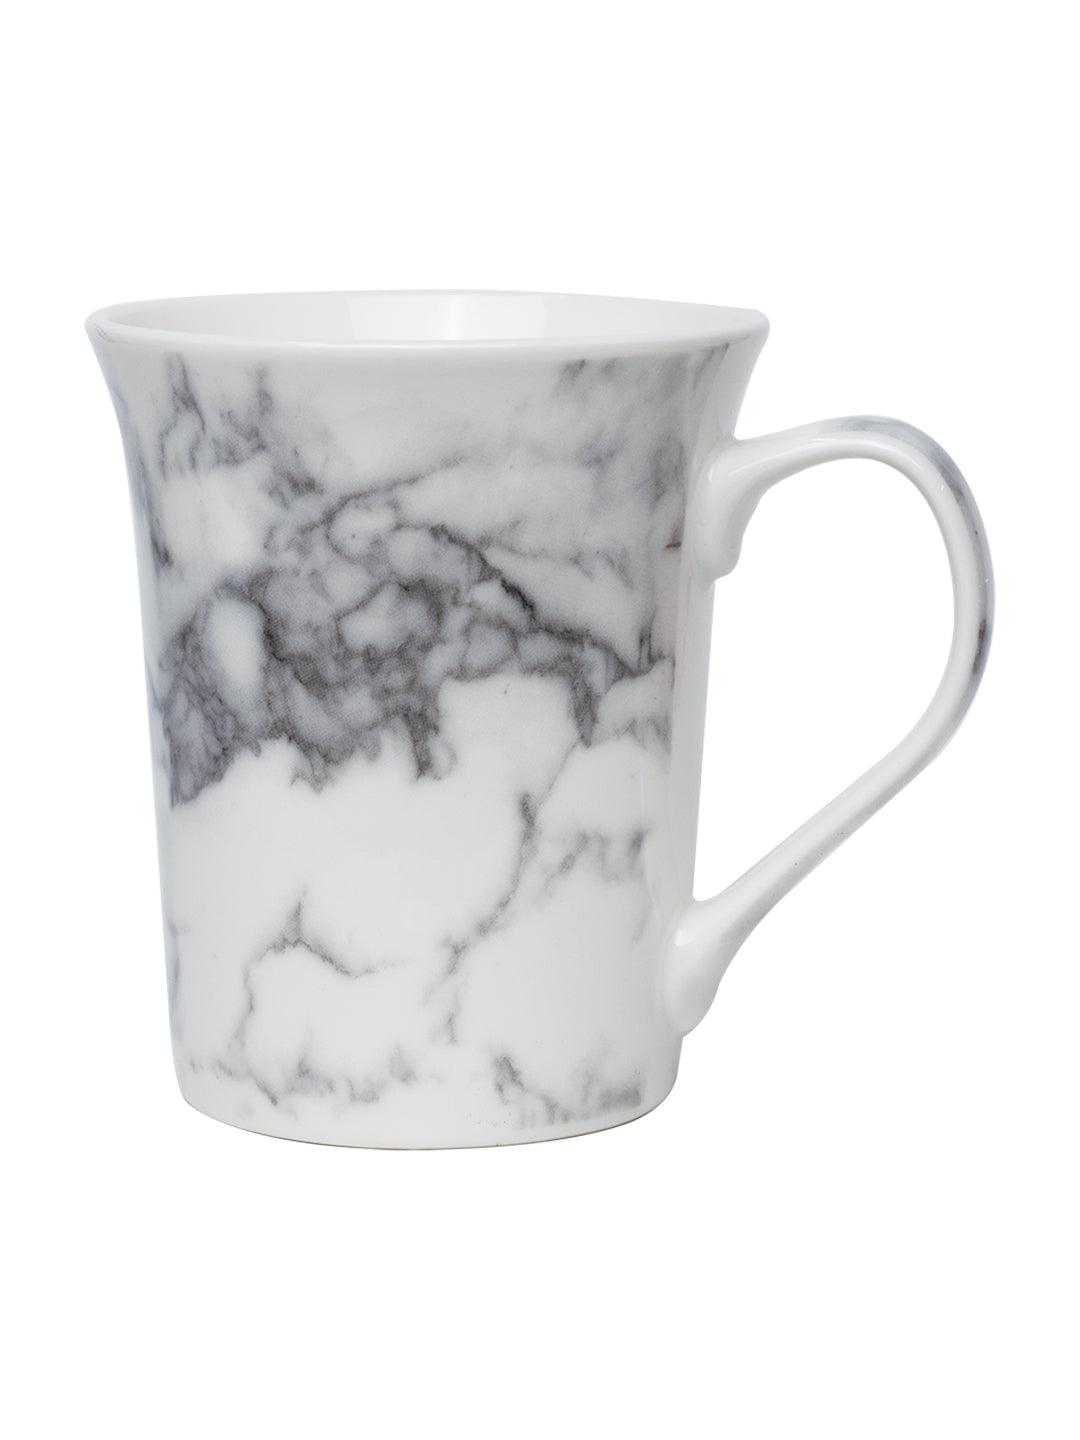 Off White & Grey Coffee Mug - 380 Ml, Marble Finish - MARKET 99